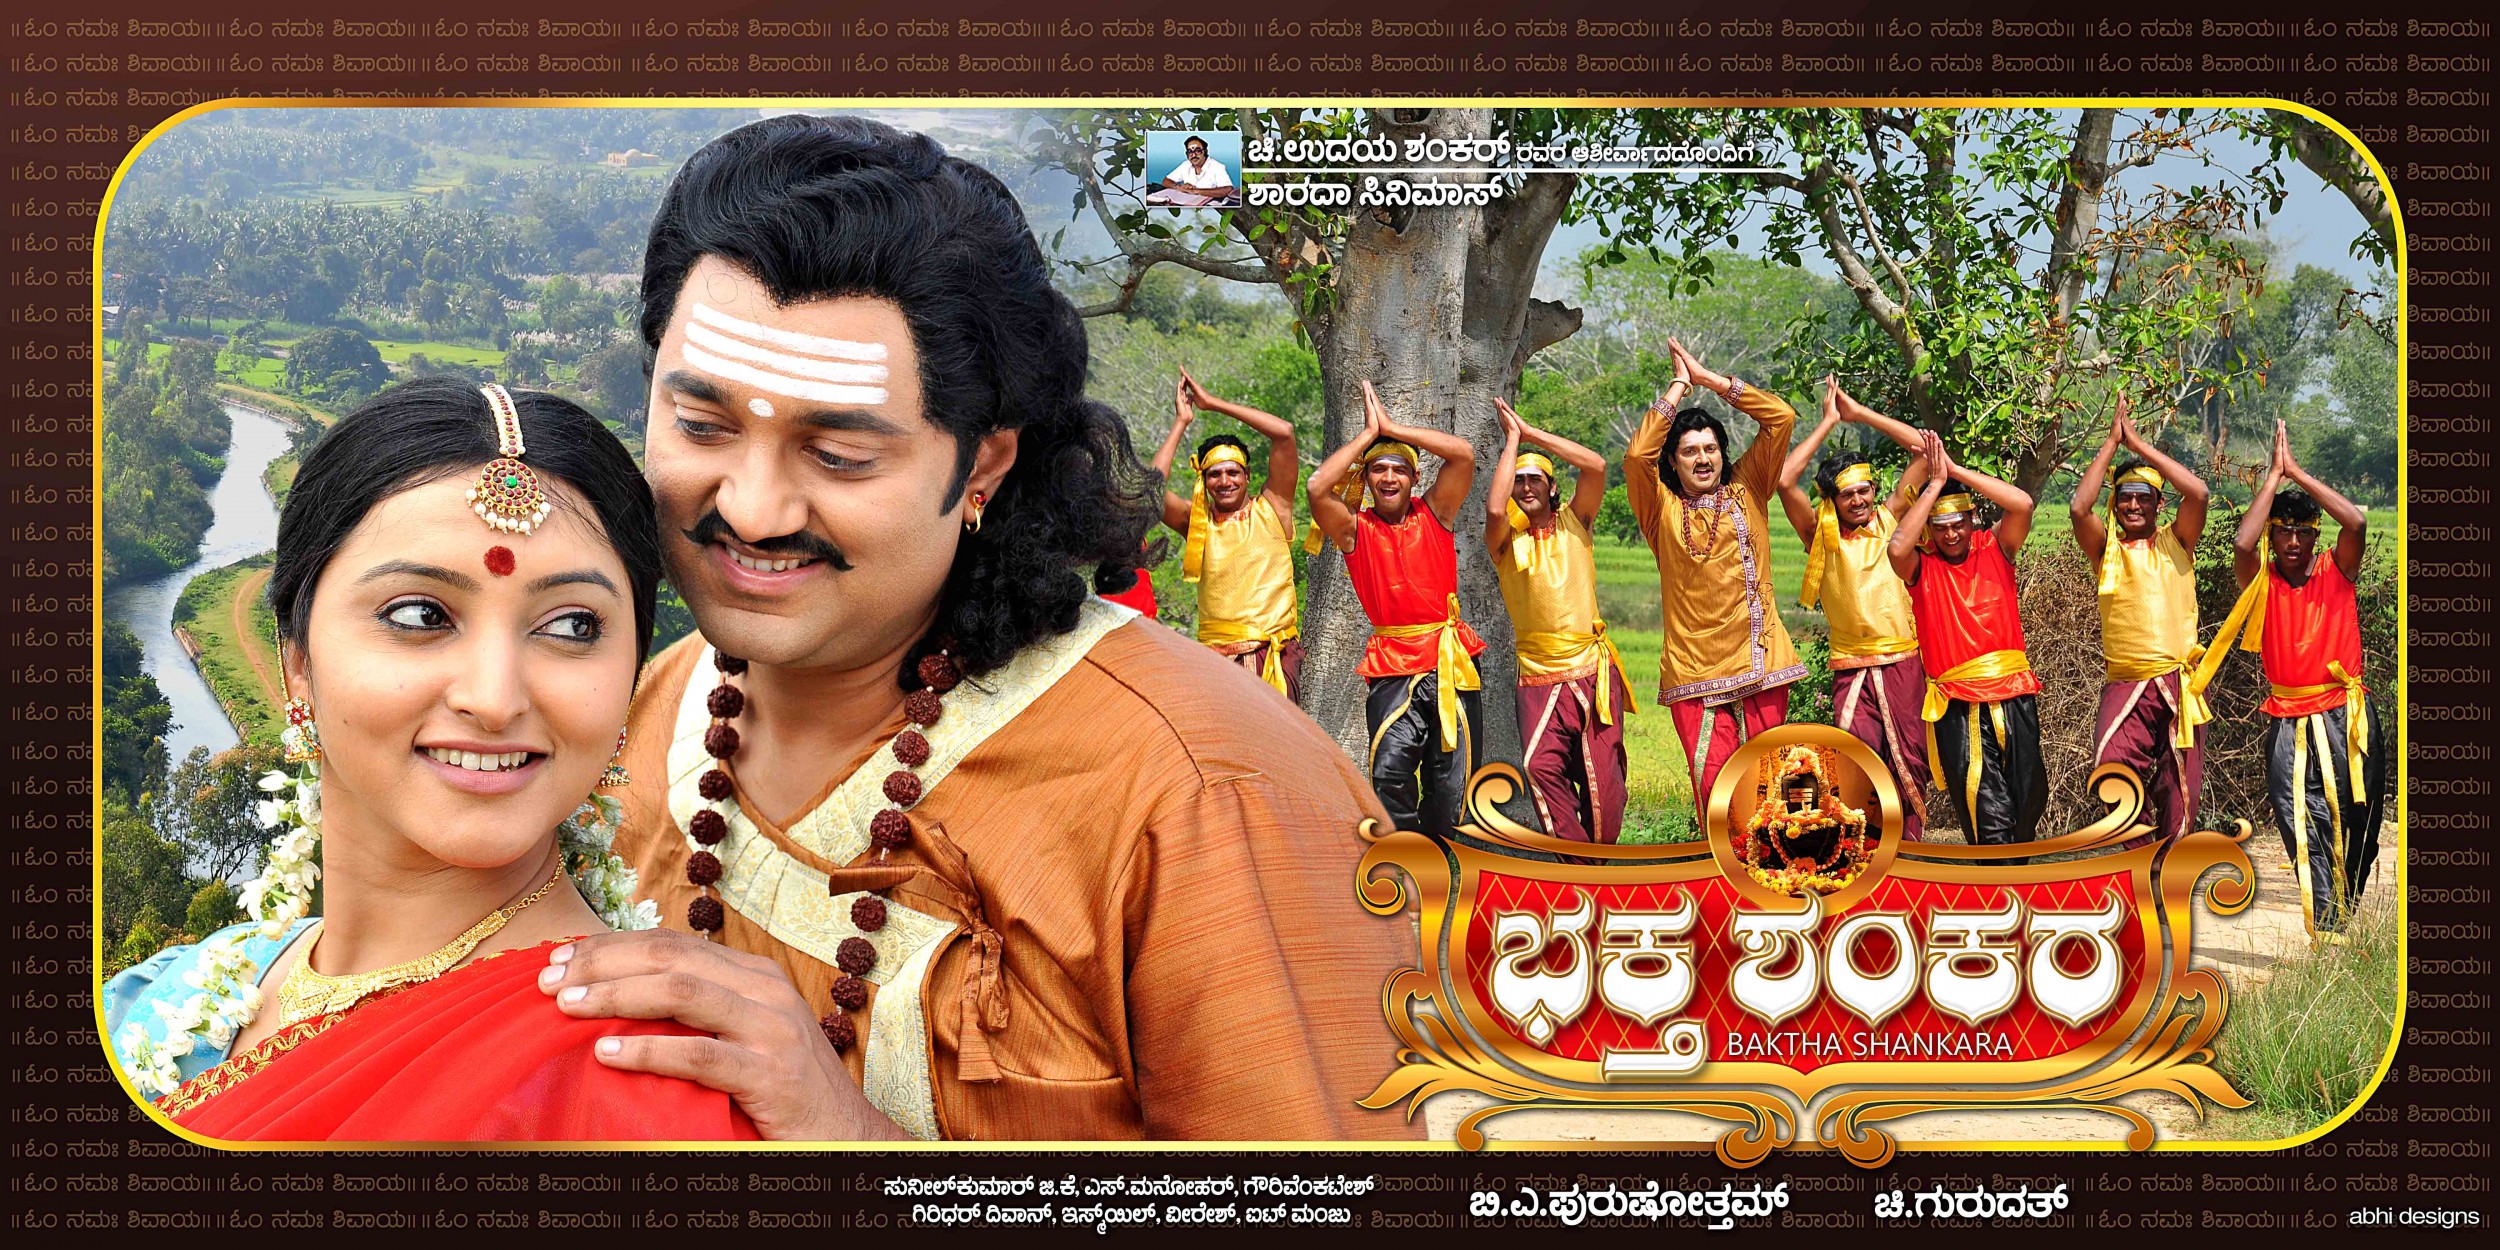 Mega Sized Movie Poster Image for Baktha Shankara (#3 of 10)